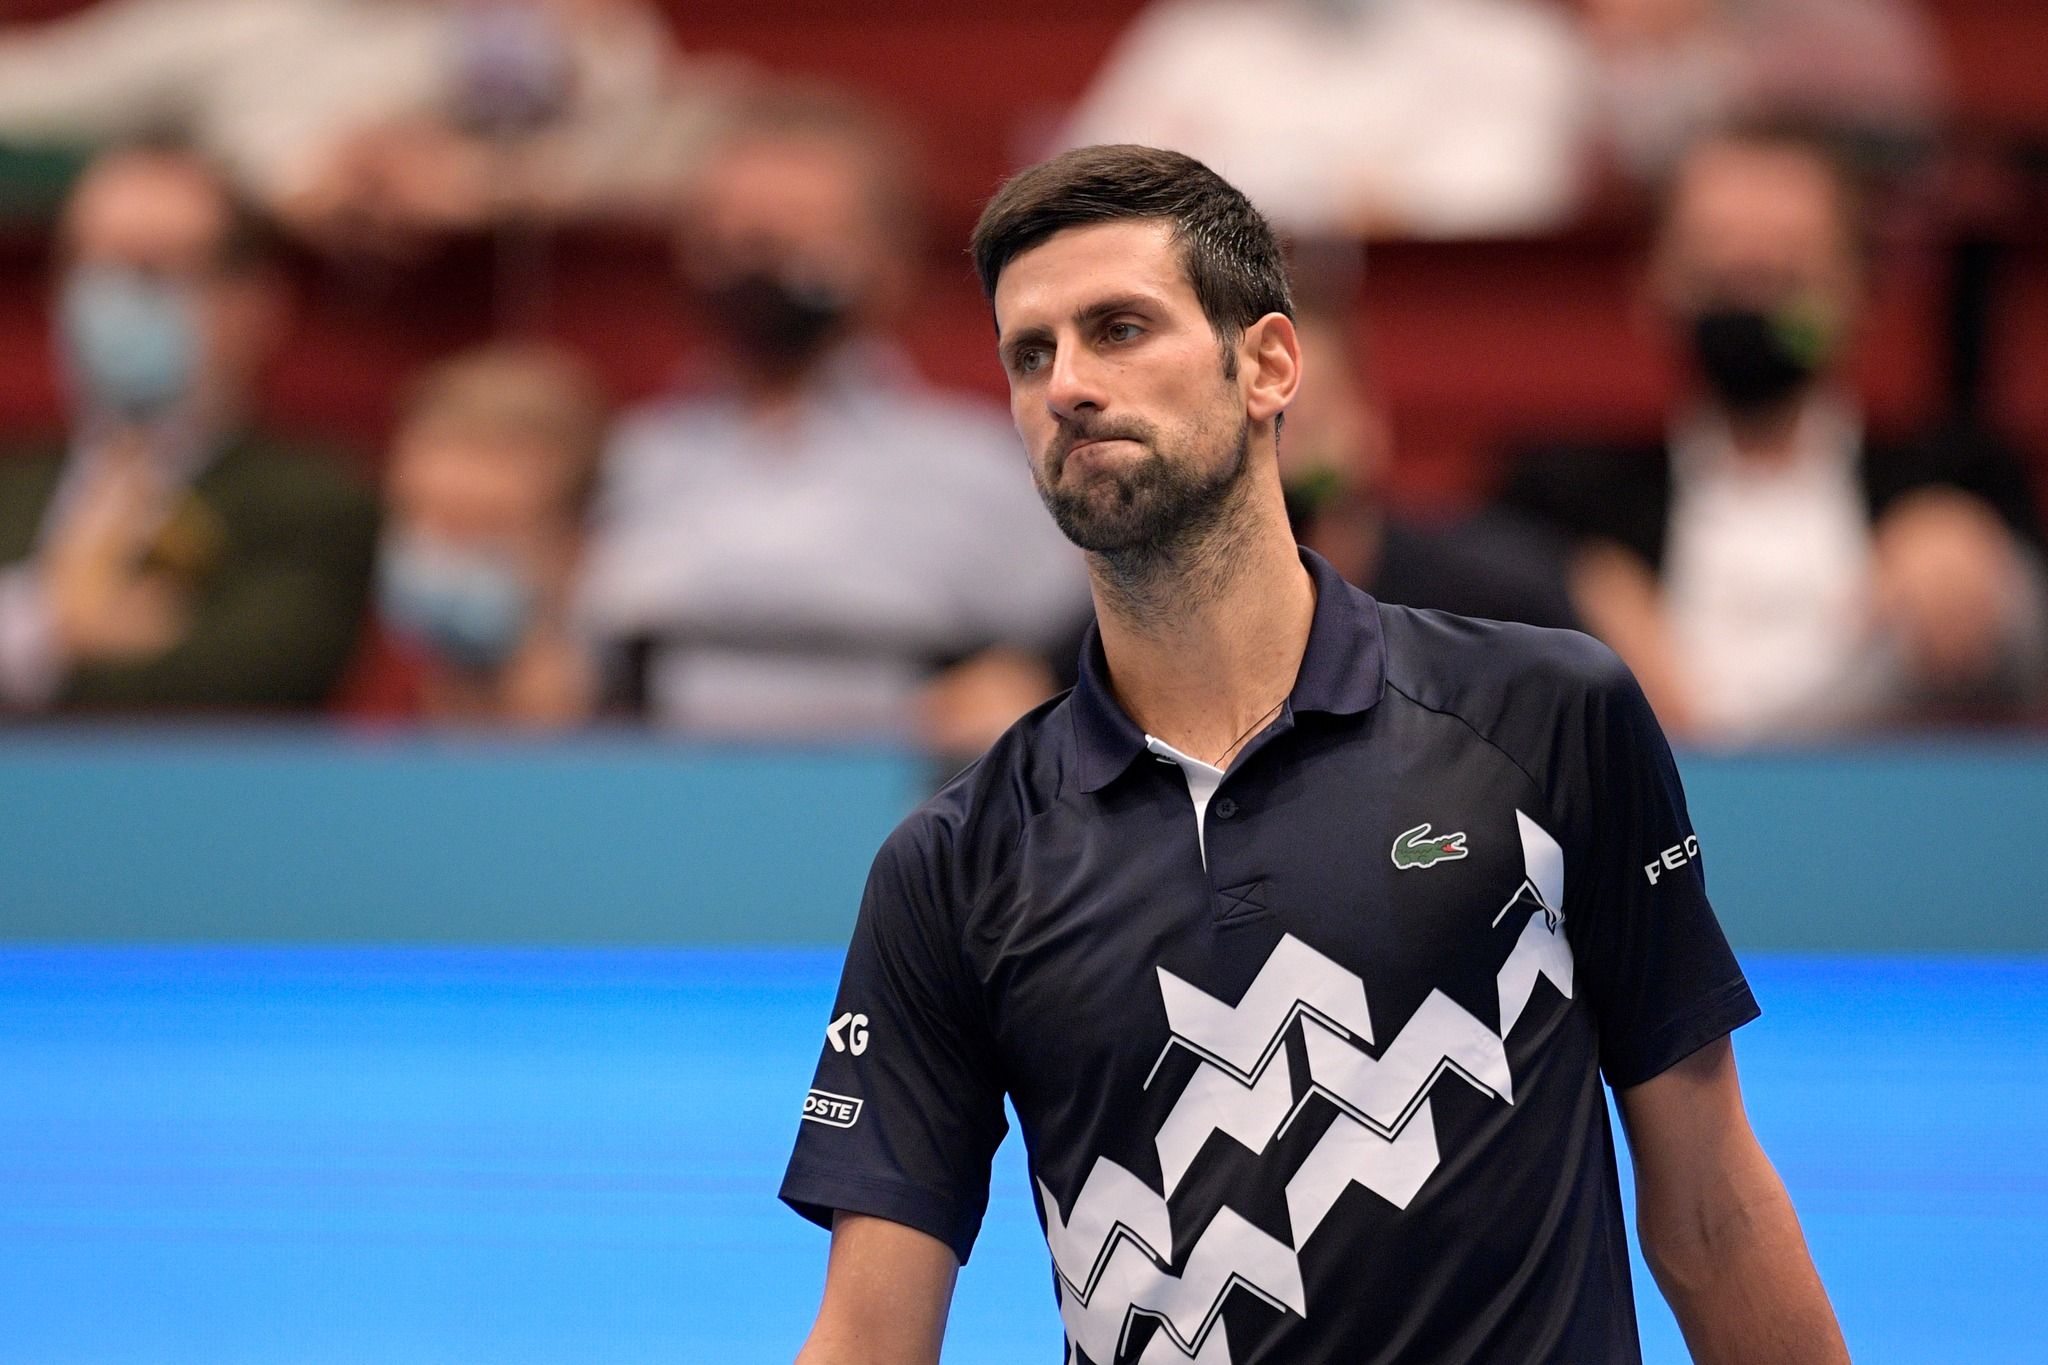 Australia cancela el visado de Djokovic y debe salir del país.